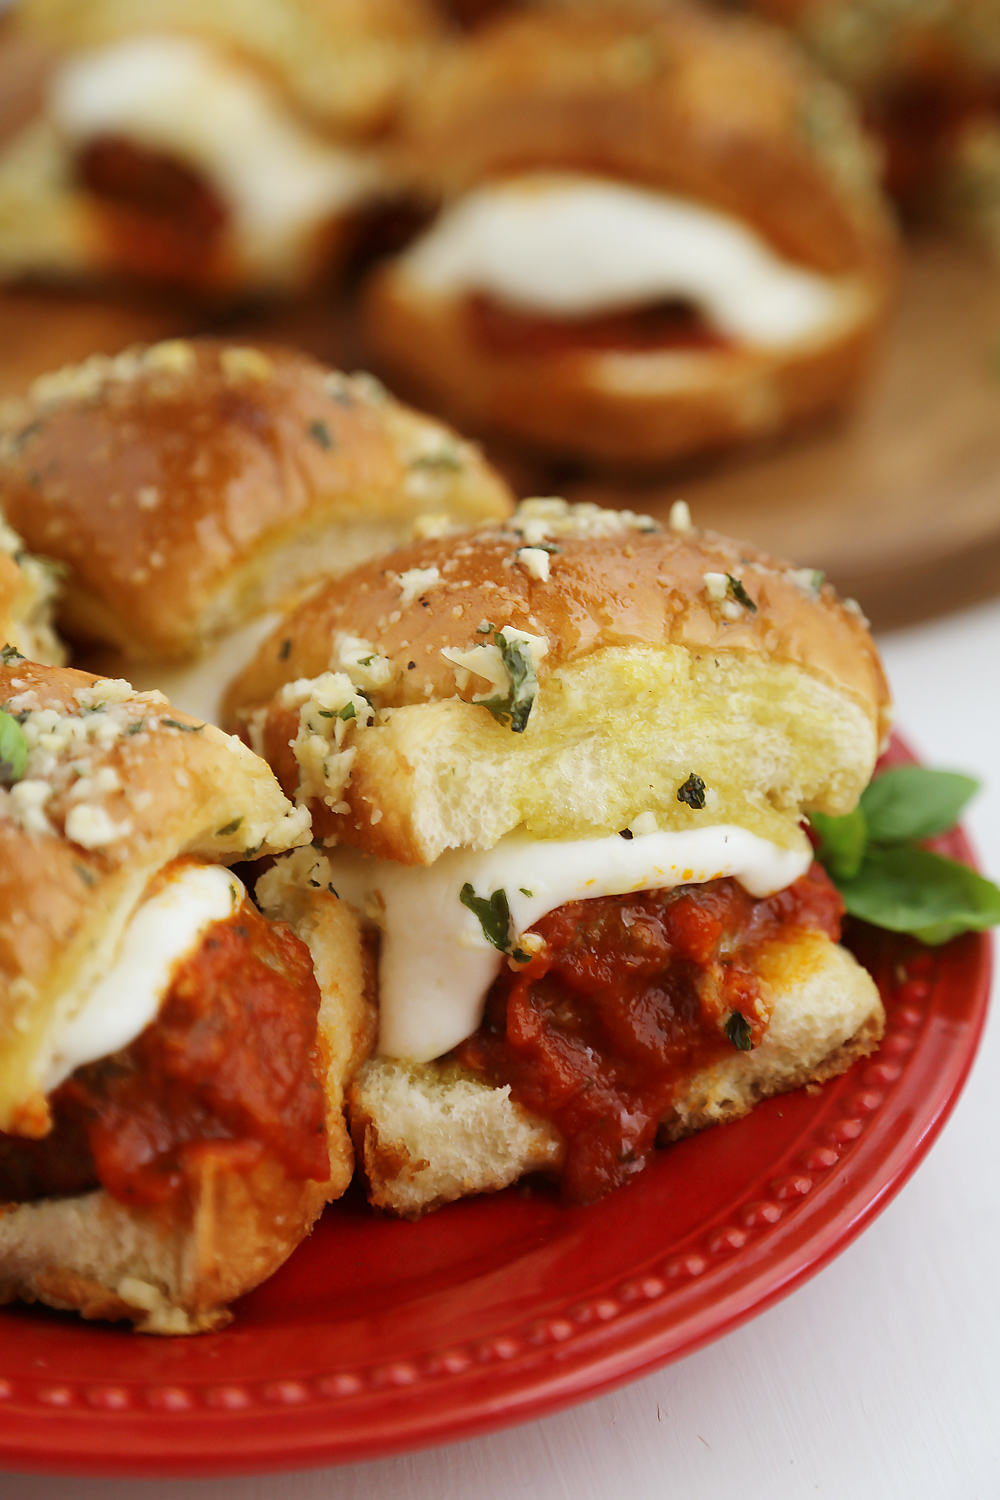 Cheesy Garlic Bread Meatball Sliders | Extremely Tasty Garlic Bread Recipes | Homemade Recipes